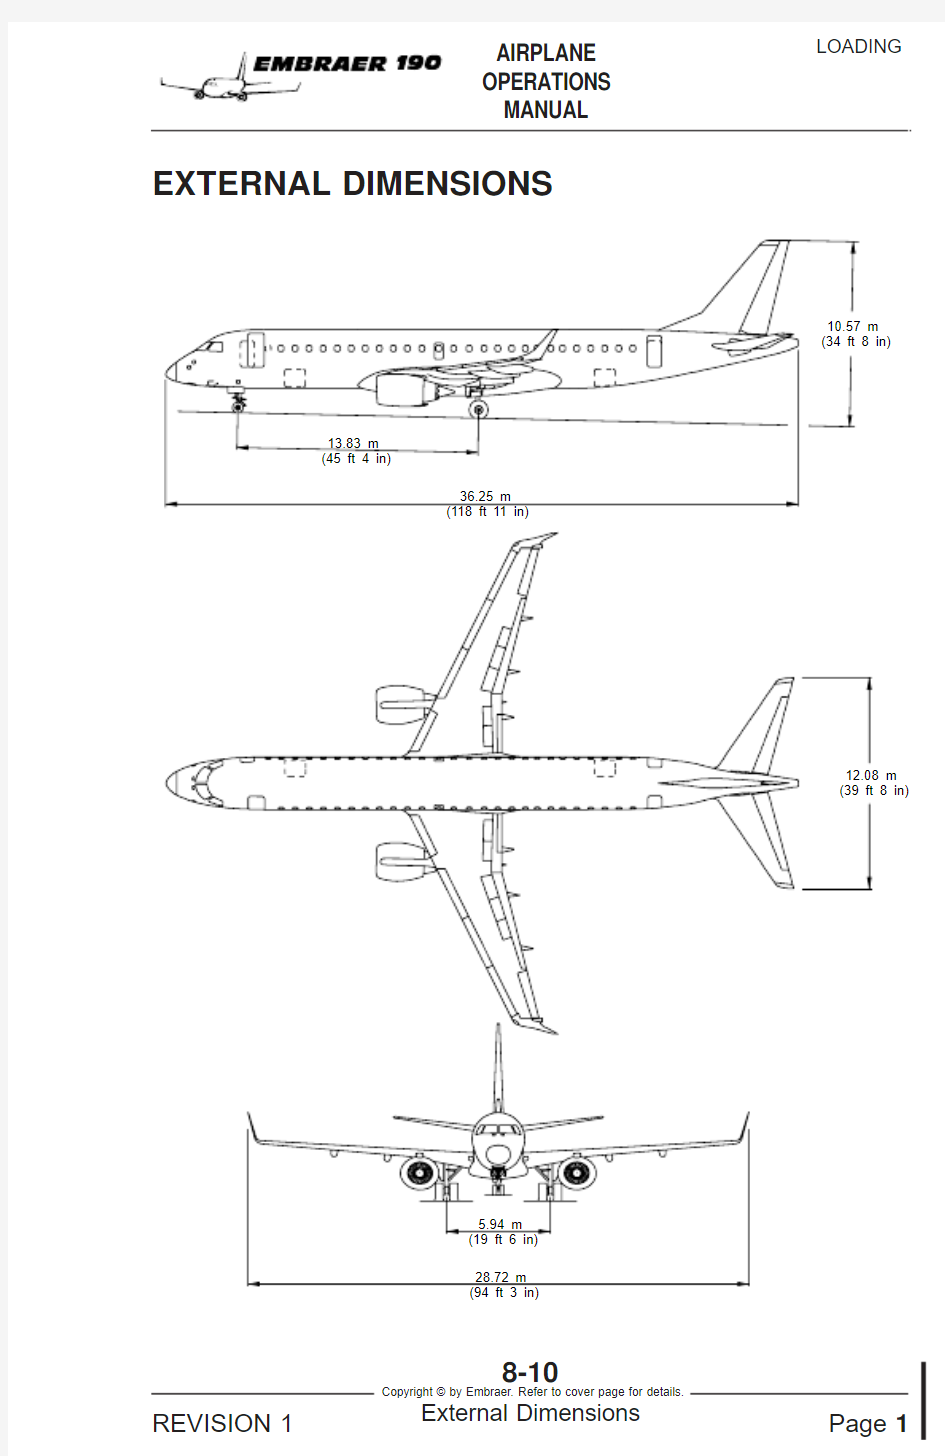 EMB190飞机外形尺寸以及各舱门尺寸